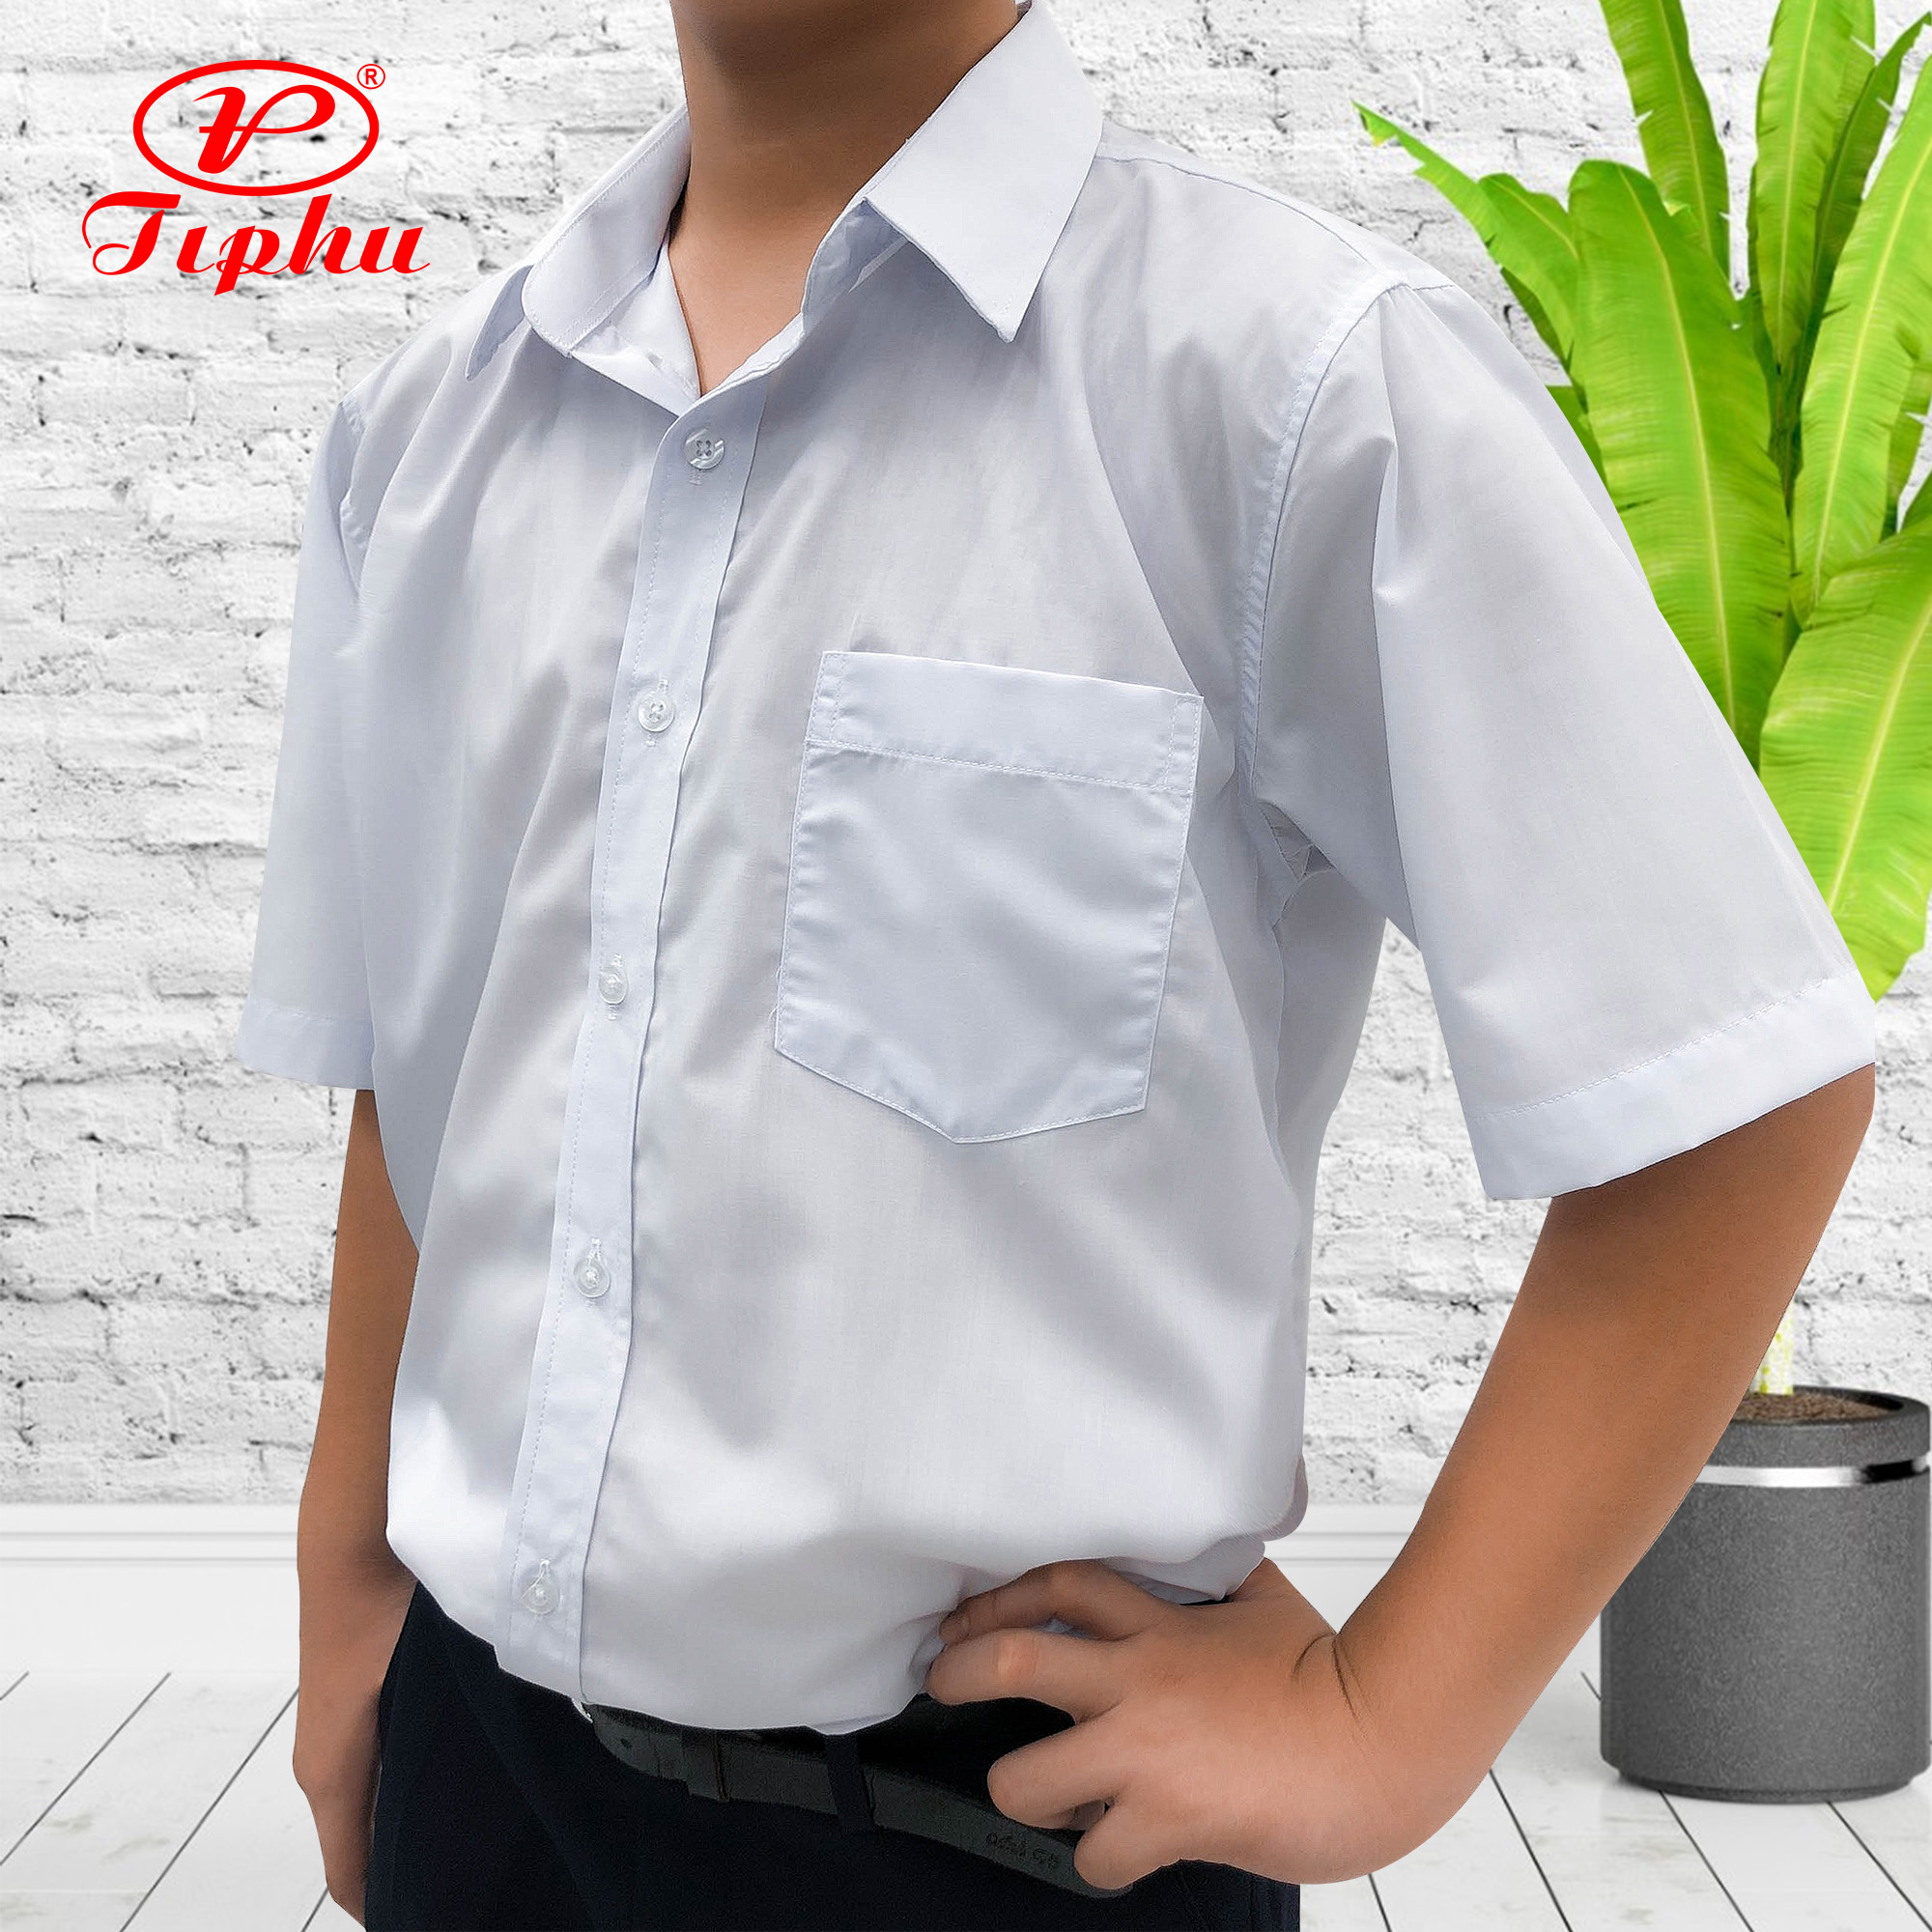 Áo trắng học sinh nam tay ngắn, đồng phục đi học cho bé trai từ 20-95 kg, vải KT Silk mềm mướt